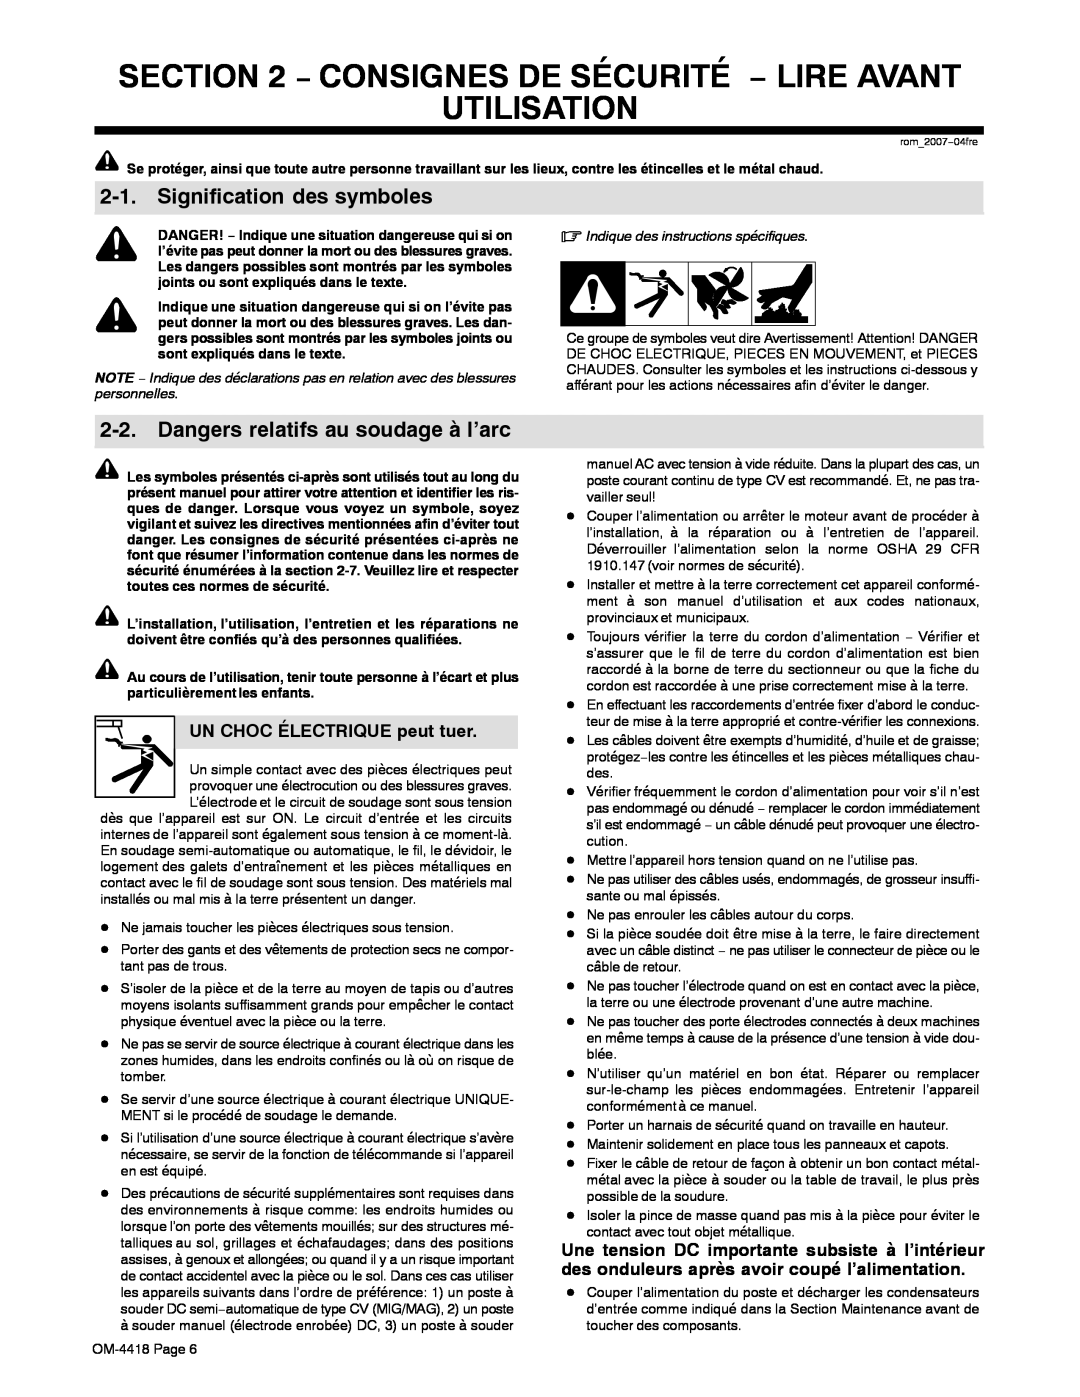 Hobart Welding Products 4500 manual Consignes De Sécurité − Lire Avant Utilisation, Signification des symboles 